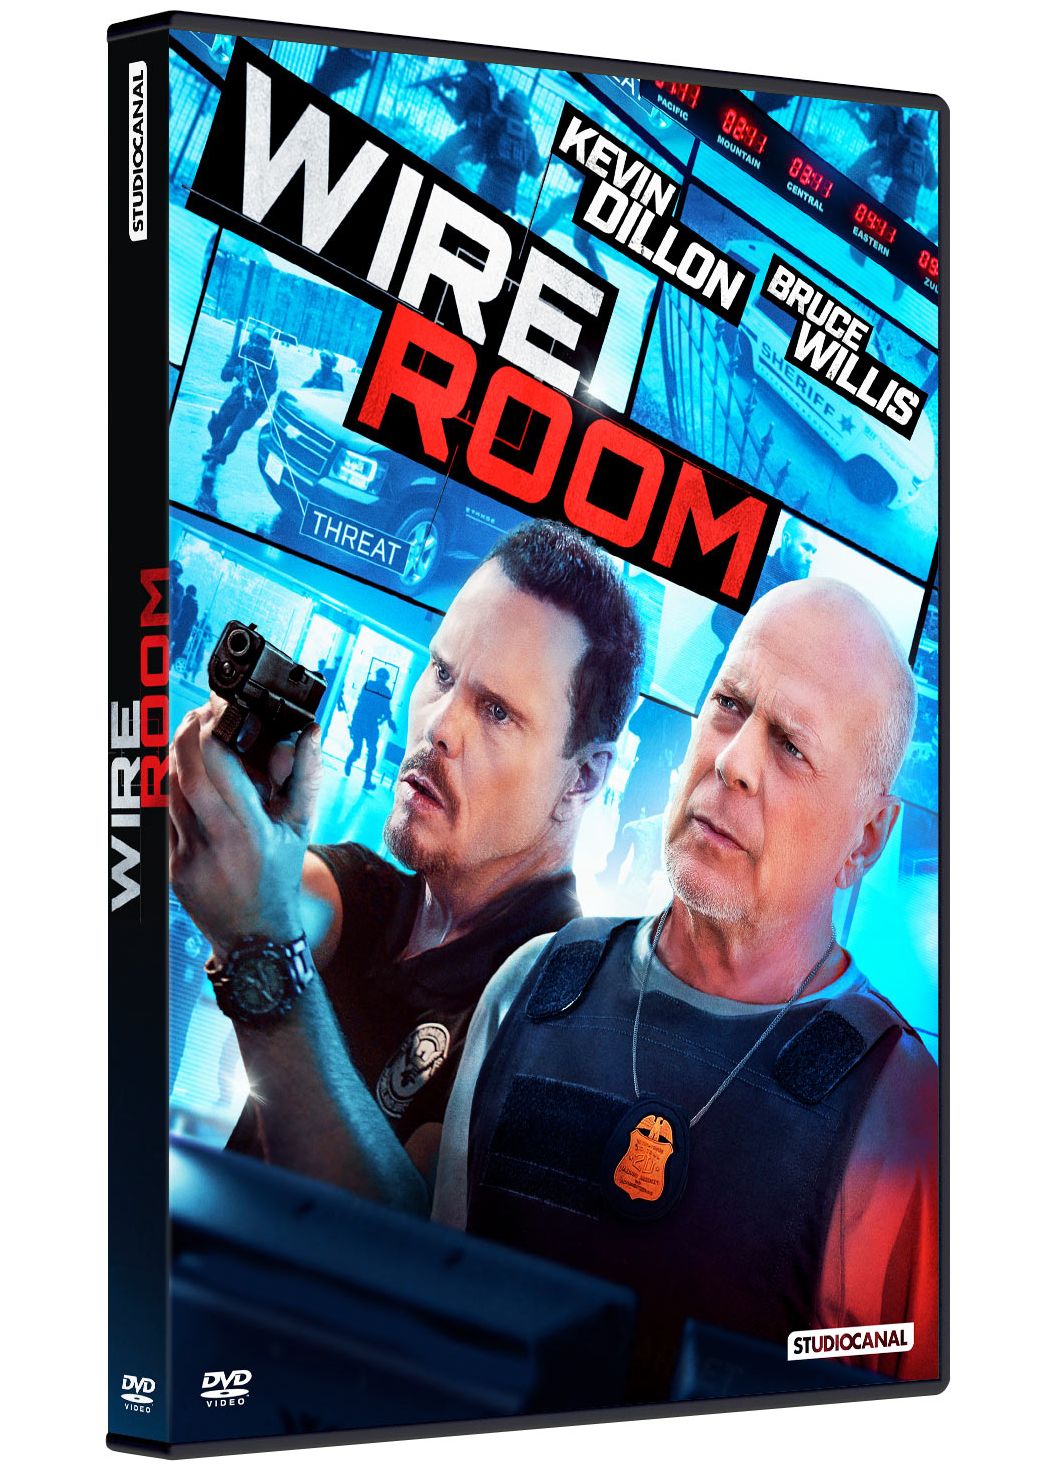 wire room |DVD à la location]